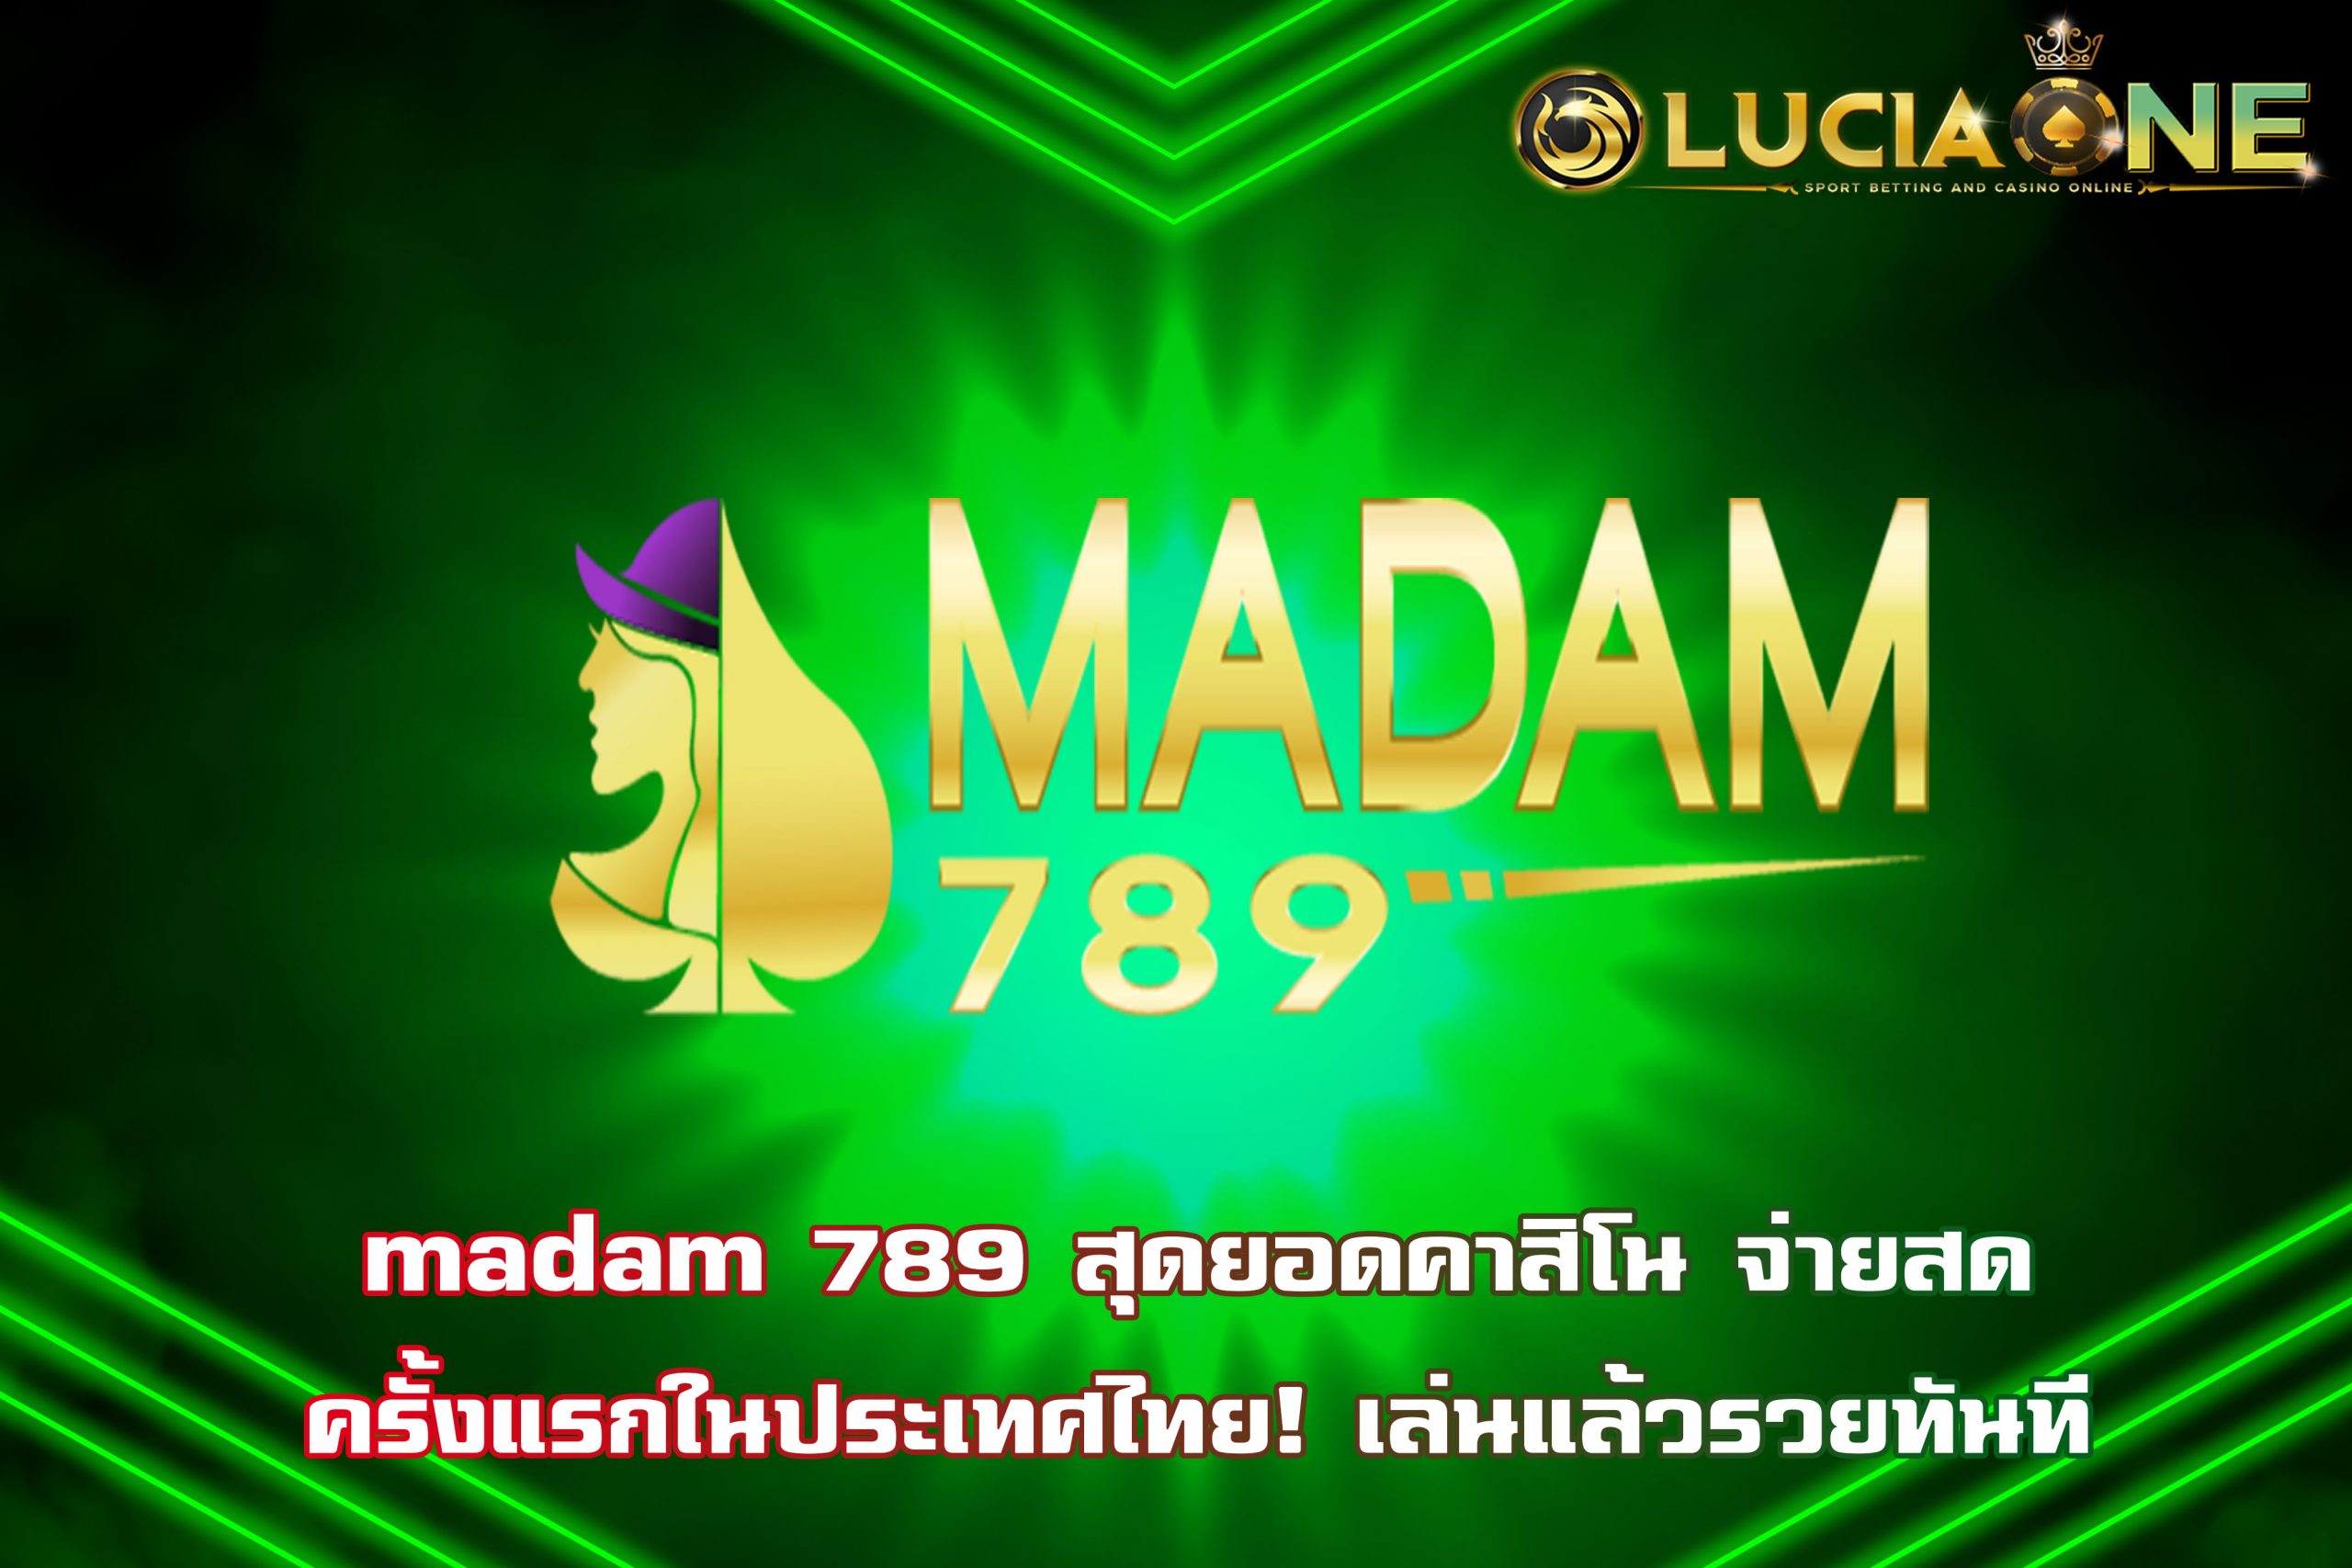 madam 789 สุดยอดคาสิโน จ่ายสด ครั้งแรกในประเทศไทย! เล่นแล้วรวยทันที